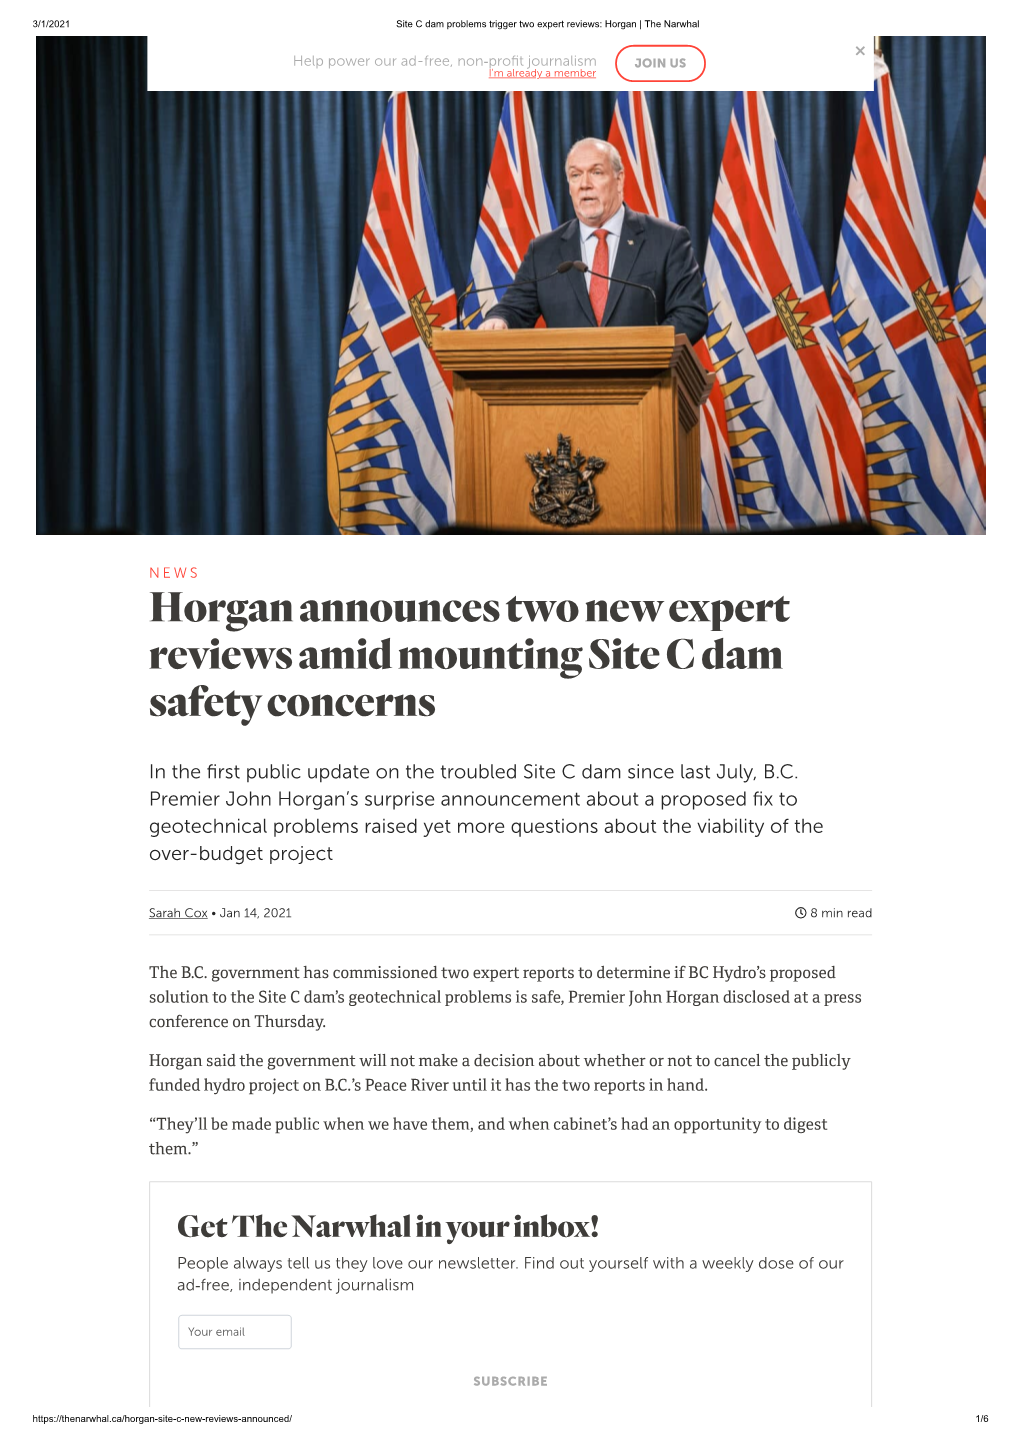 Horgan Announcestwo Newexpert Reviewsamidmounting Site C Dam